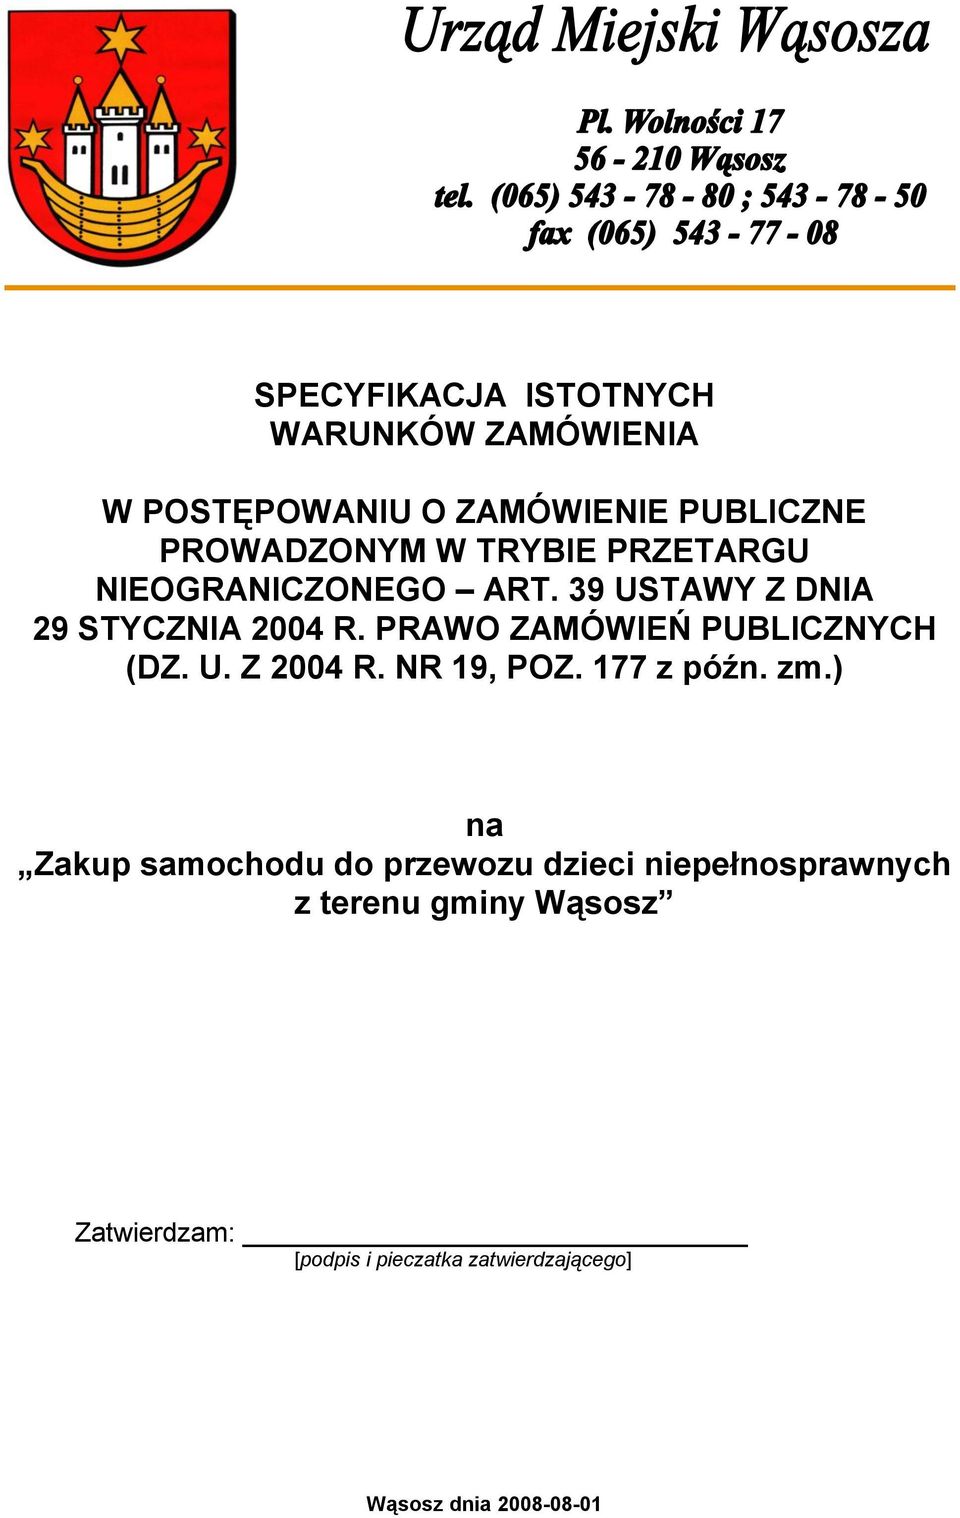 PRAWO ZAMÓWIEŃ PUBLICZNYCH (DZ. U. Z 2004 R. NR 19, POZ. 177 z późn. zm.